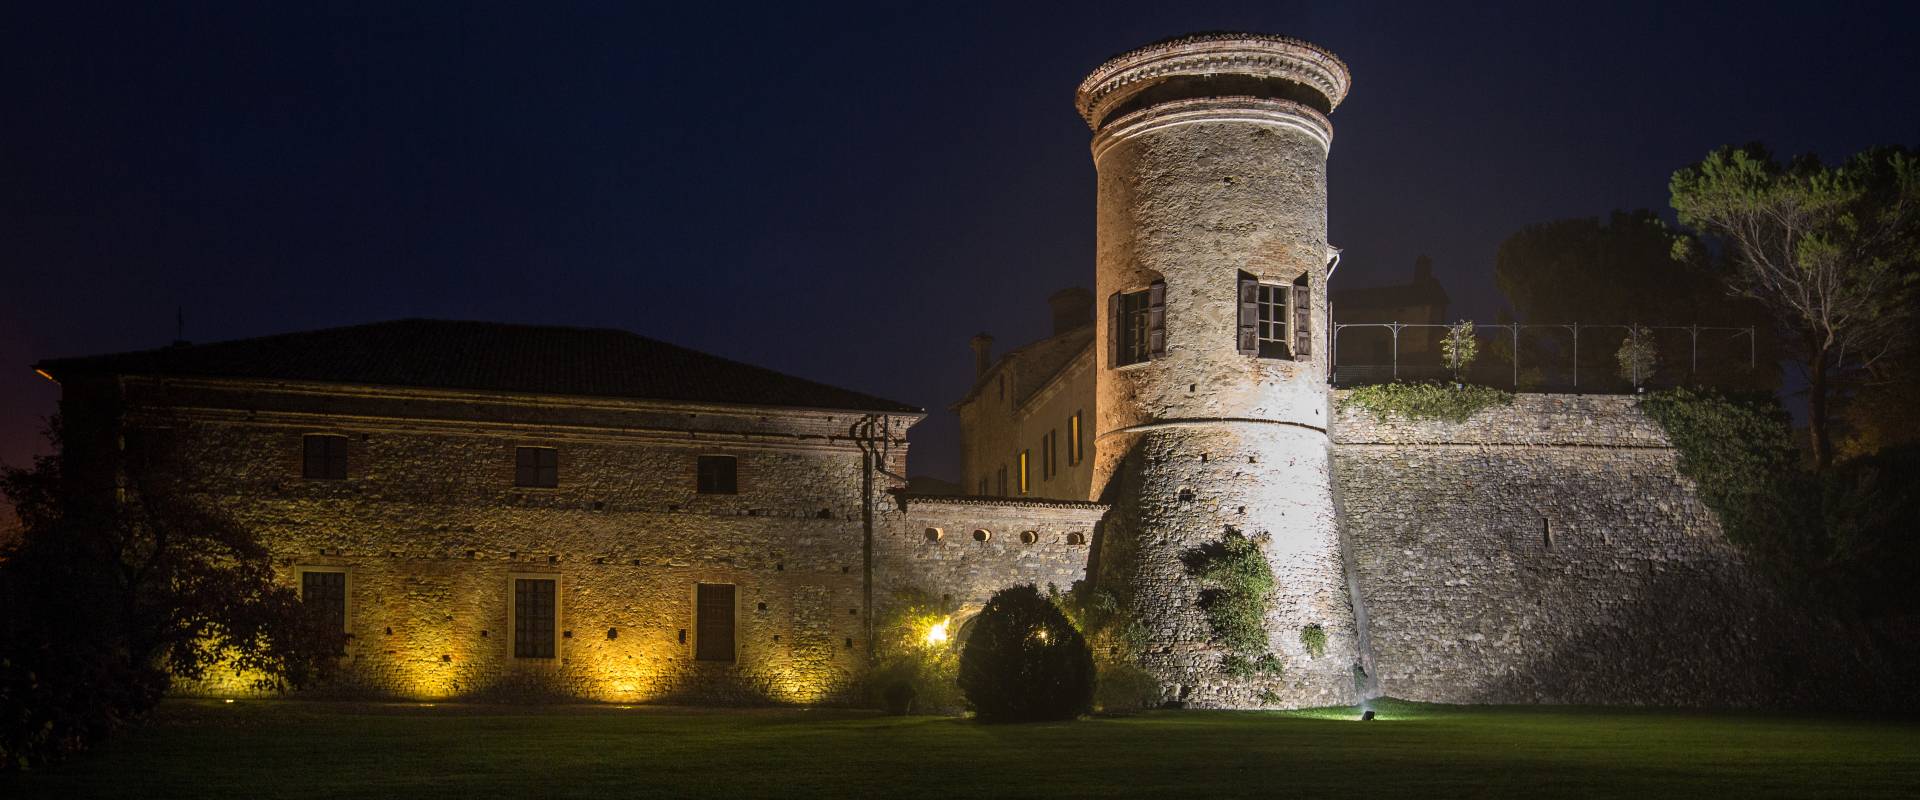 Castello di Scipione dei Marchesi Pallavicino - La facciata dal giardino in notturna foto di Foto Bocelli - Castello di Scipione